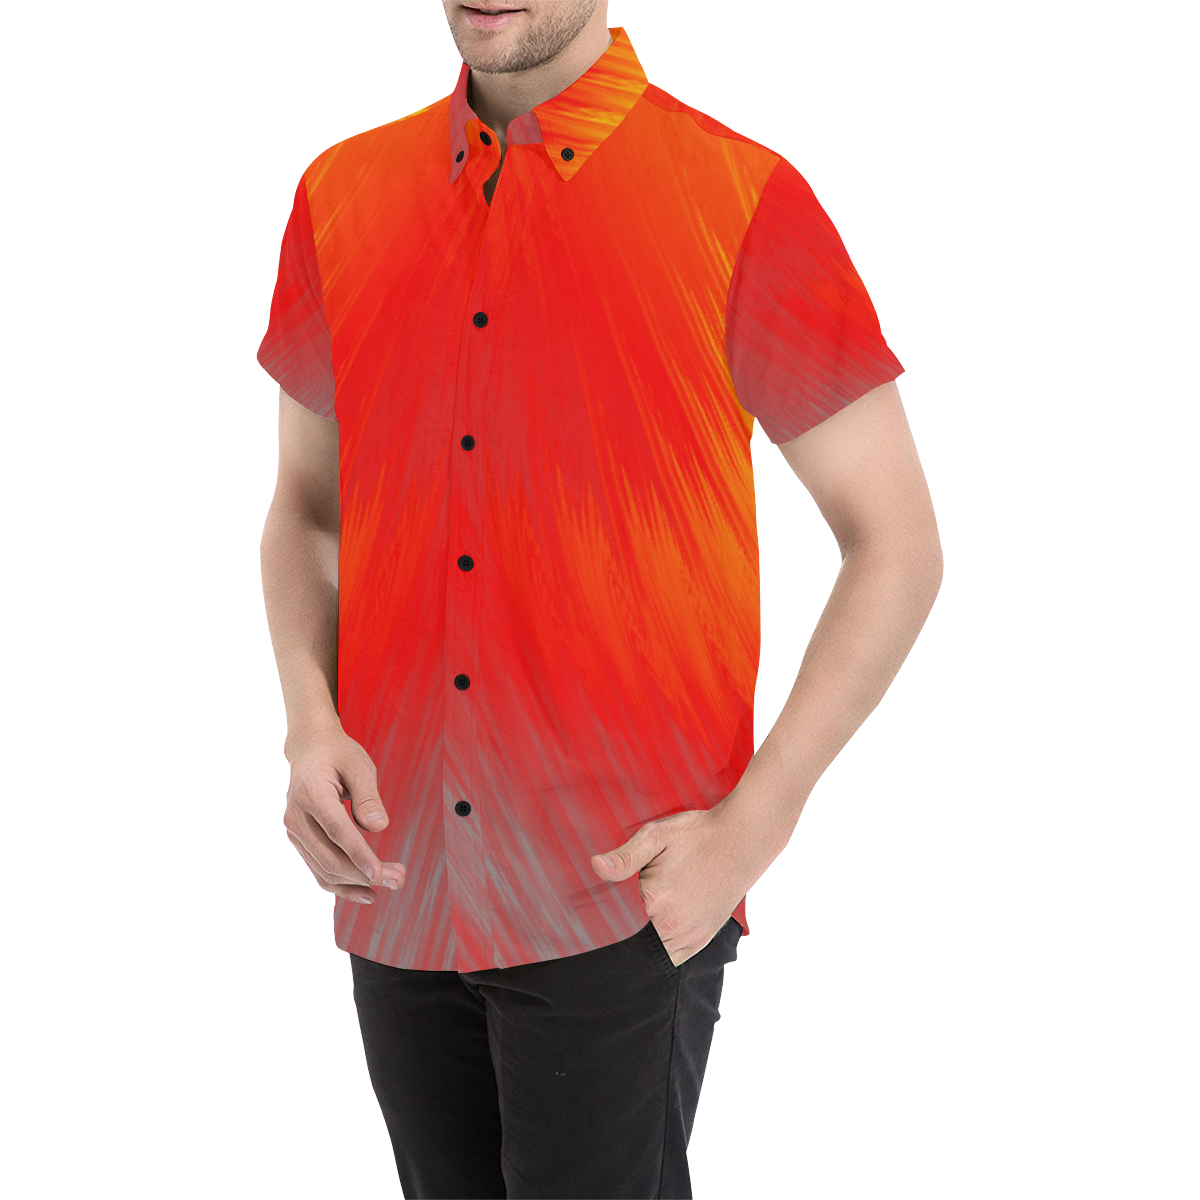 Hilbert Grid Fiery Men's All Over Print Short Sleeve Shirt (Model T53)